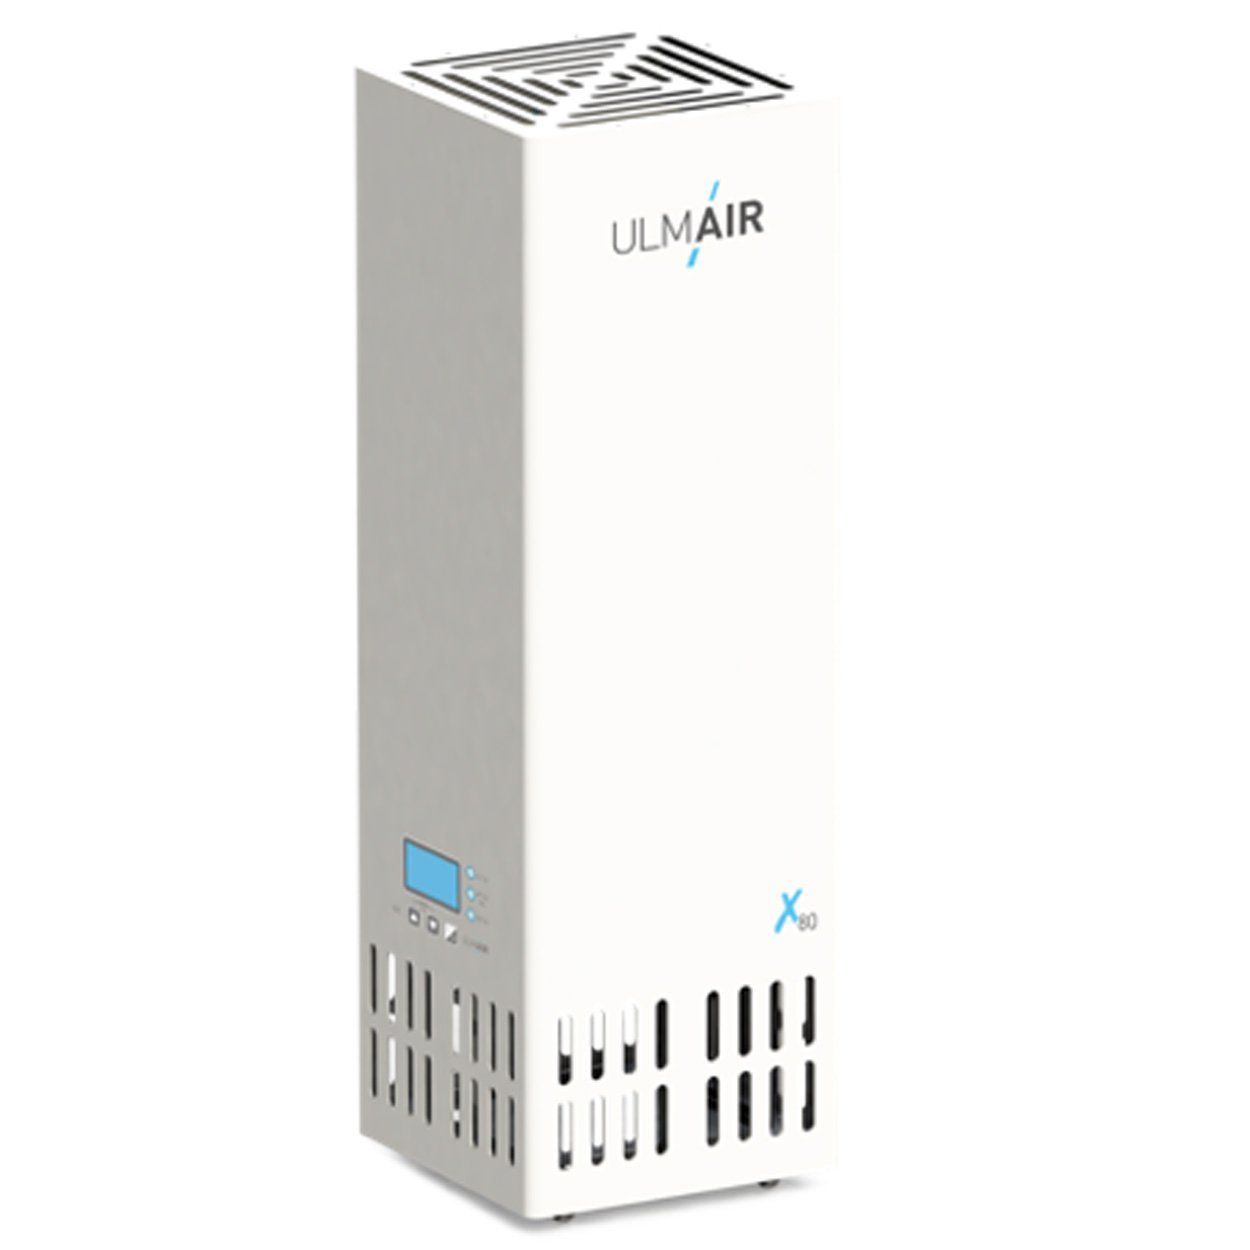 Das kompakte und mobile Luftfiltergerät ULMAIR X80 mit 5-Stufen-Filtration entfernt 99,995% aller Viren, Bakterien, Pollen und Keime.